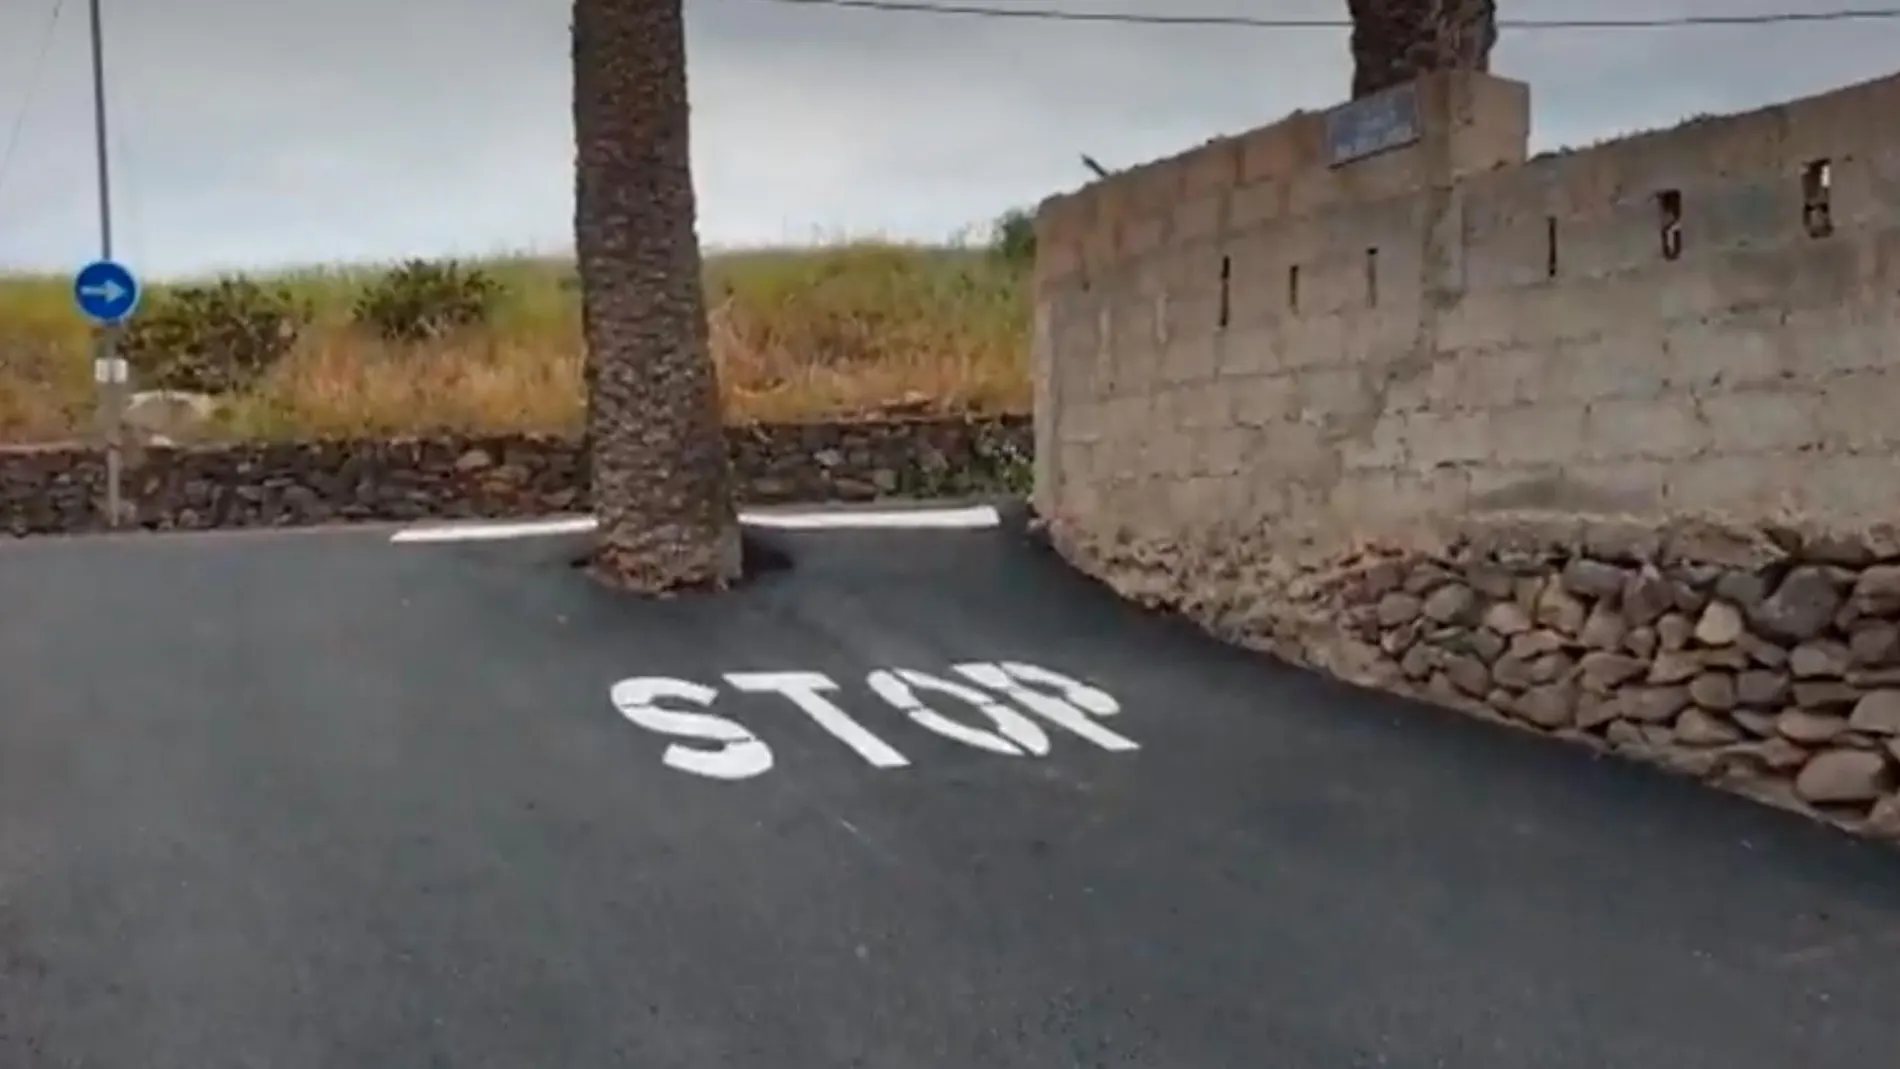 Señal de “stop” en Gran Canaria